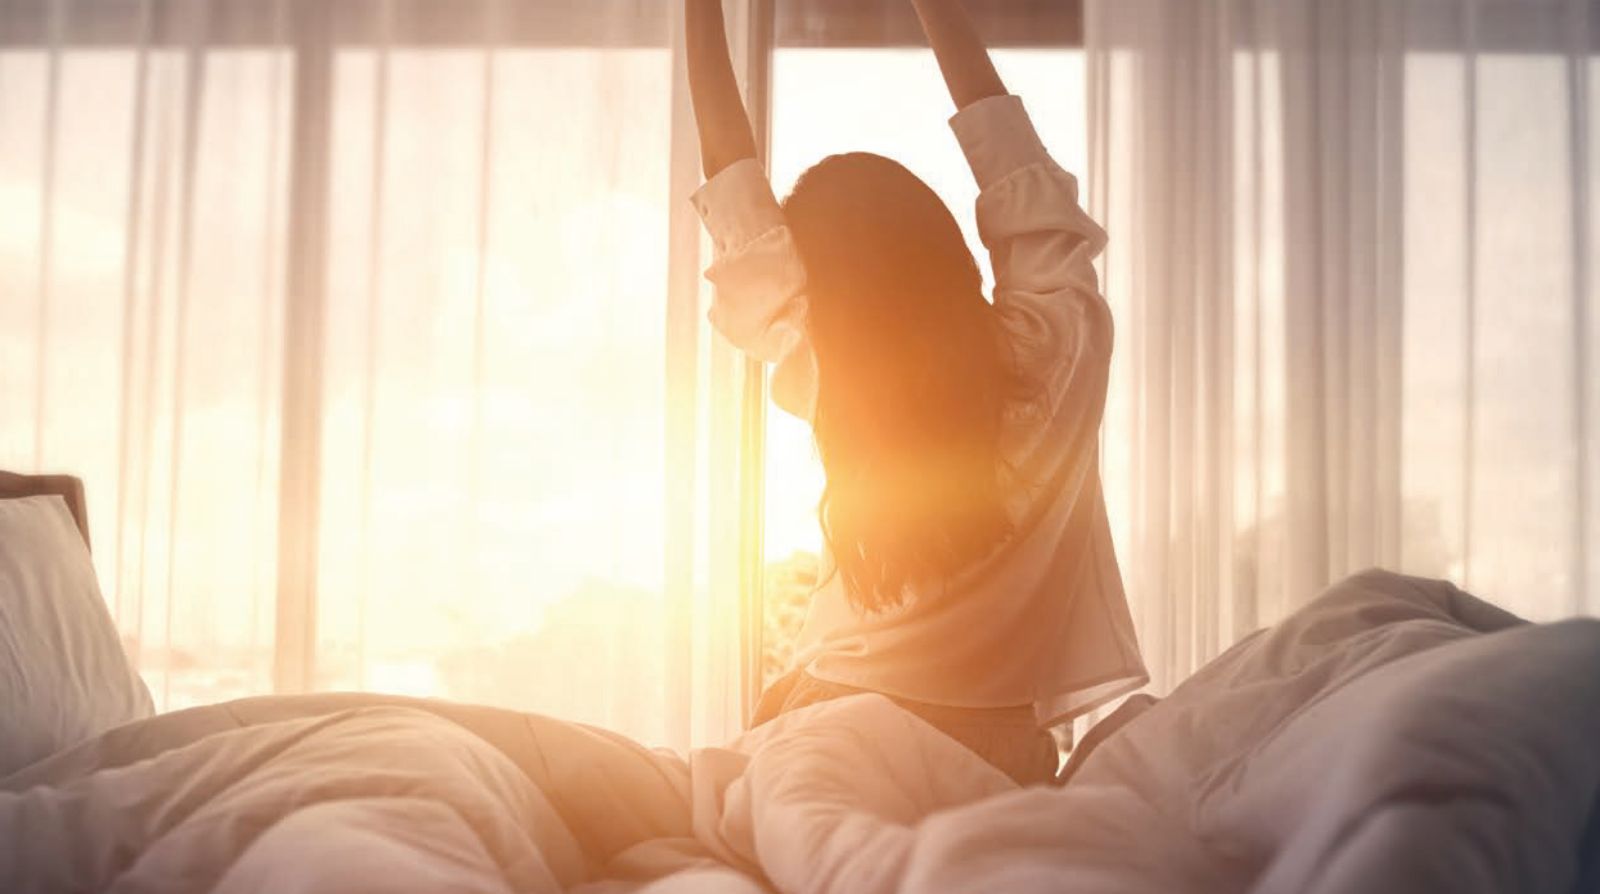 Frau steht aus dem Bett auf während Sonne durch das Fenster strahlt